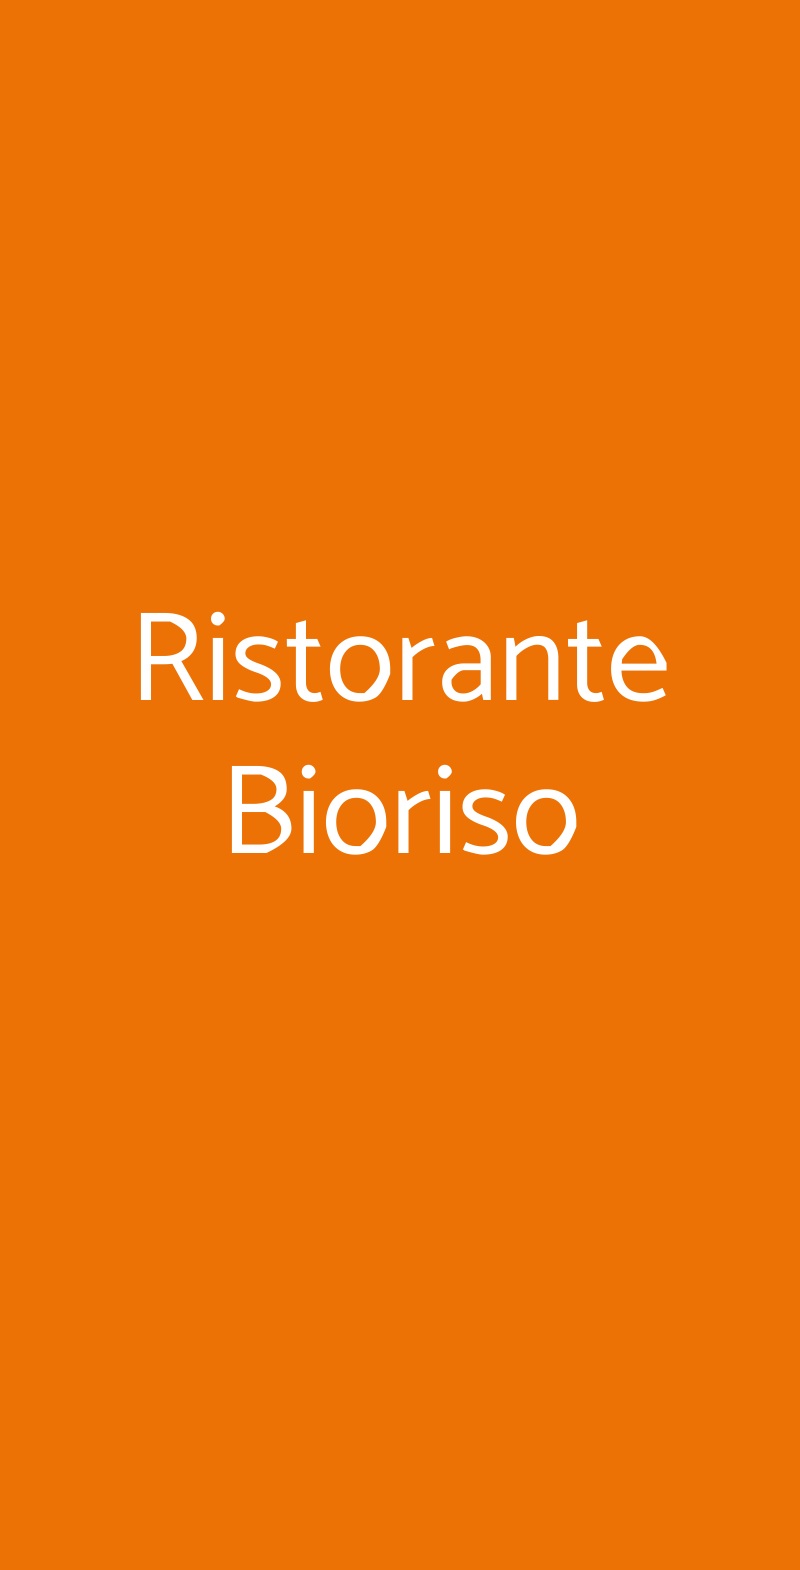 Ristorante Bioriso Milano menù 1 pagina